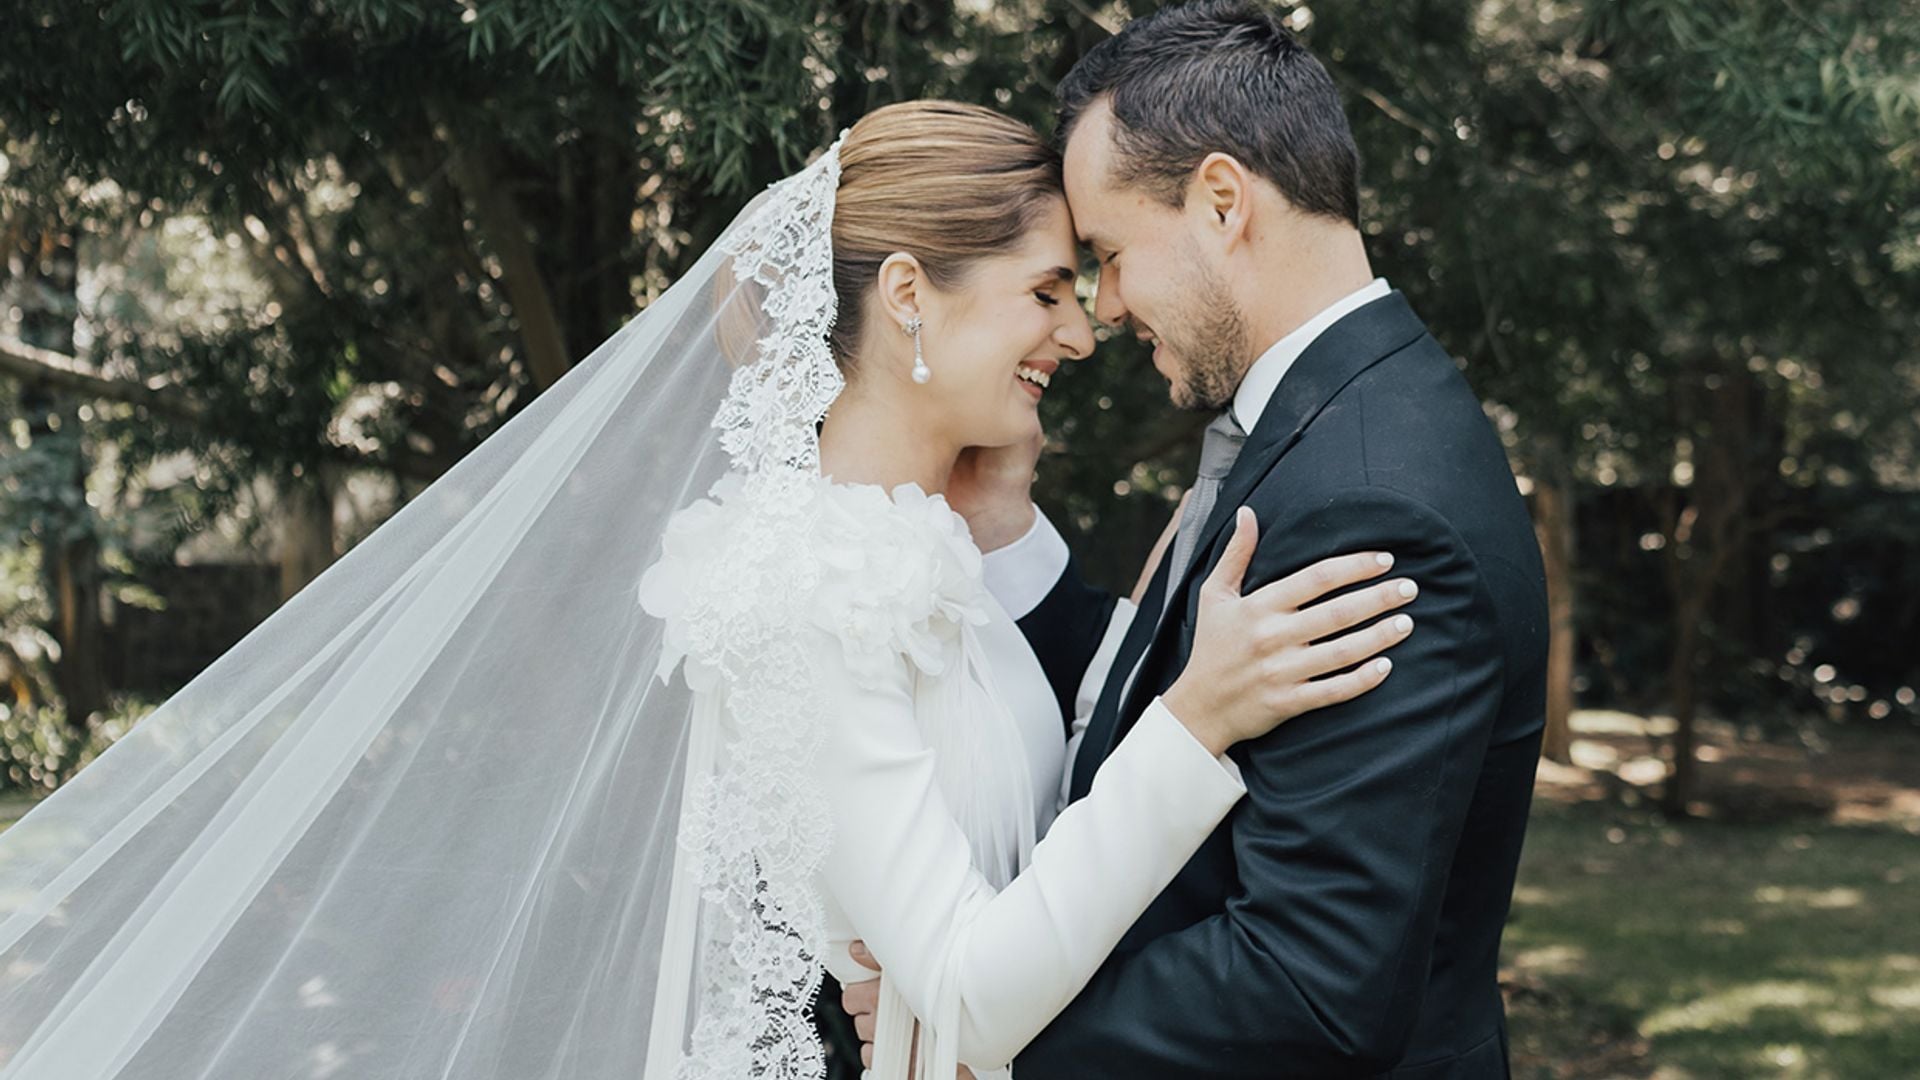 La boda de Ana en México con un vestido ‘made in Spain’ y un velo muy especial